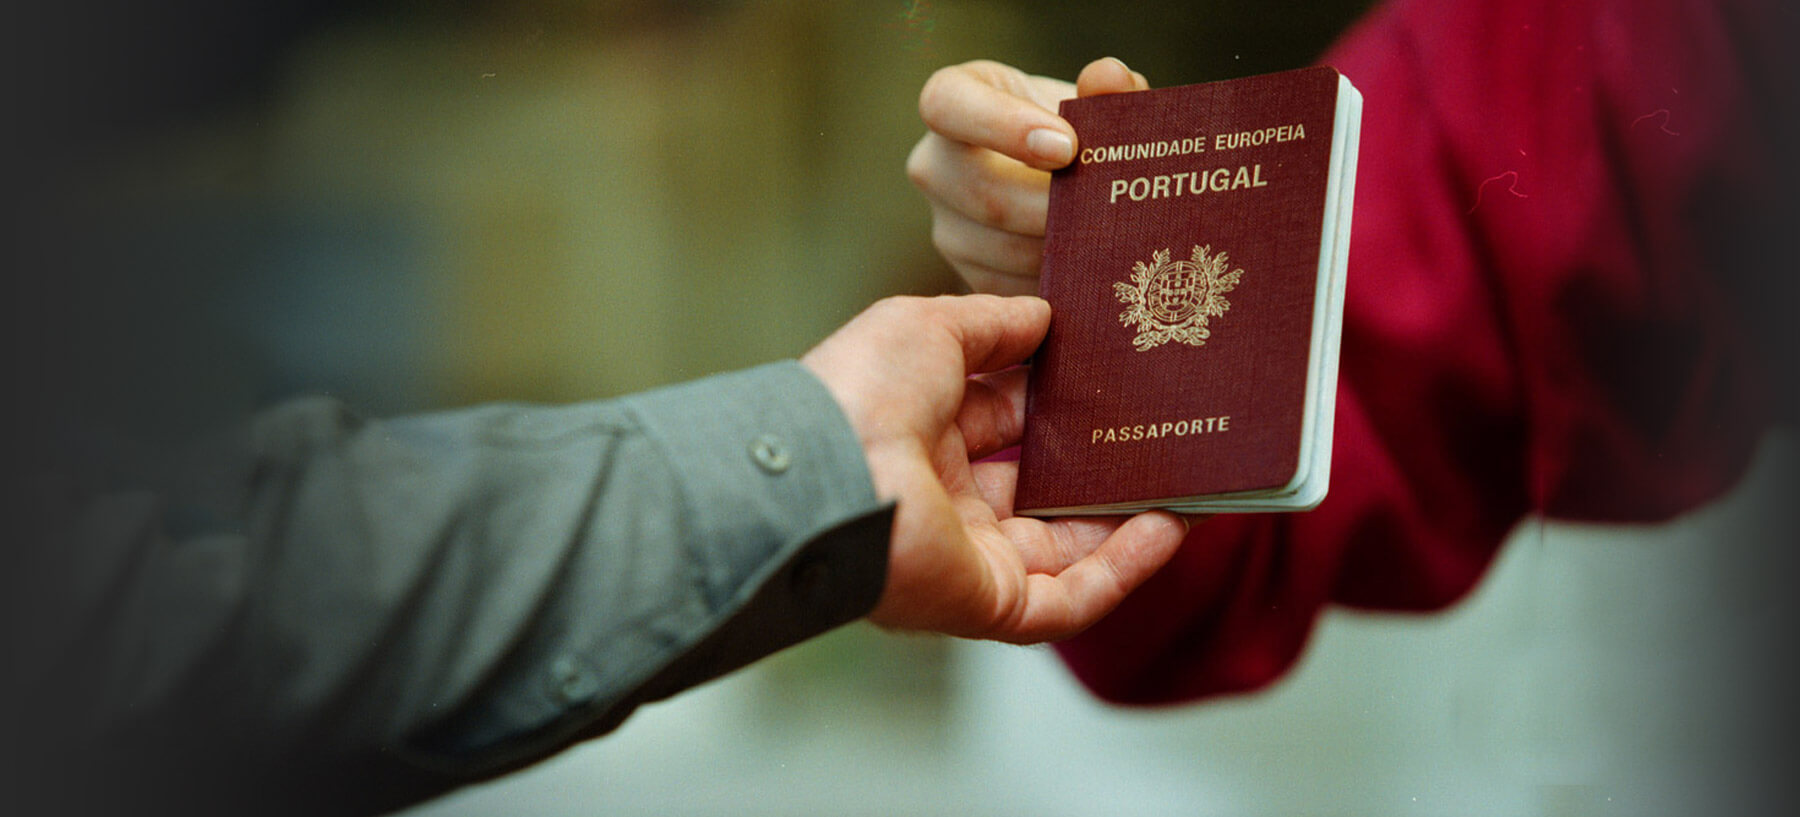 Portugal Tem O Sexto Passaporte Mais Poderoso Do Mundo